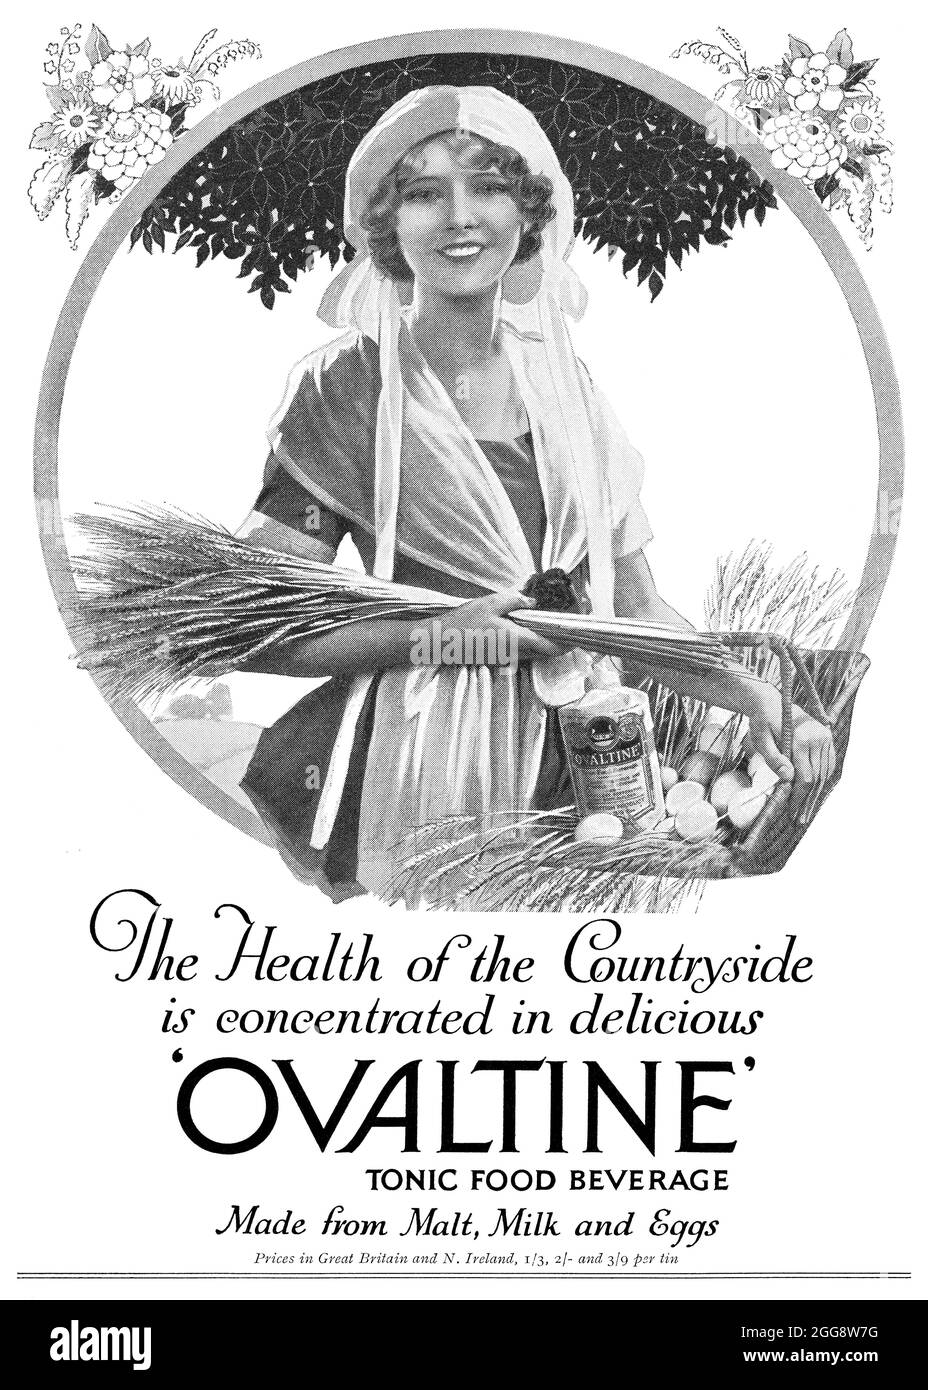 1930 British advertisement for Ovaltine malted milk drink. Stock Photo